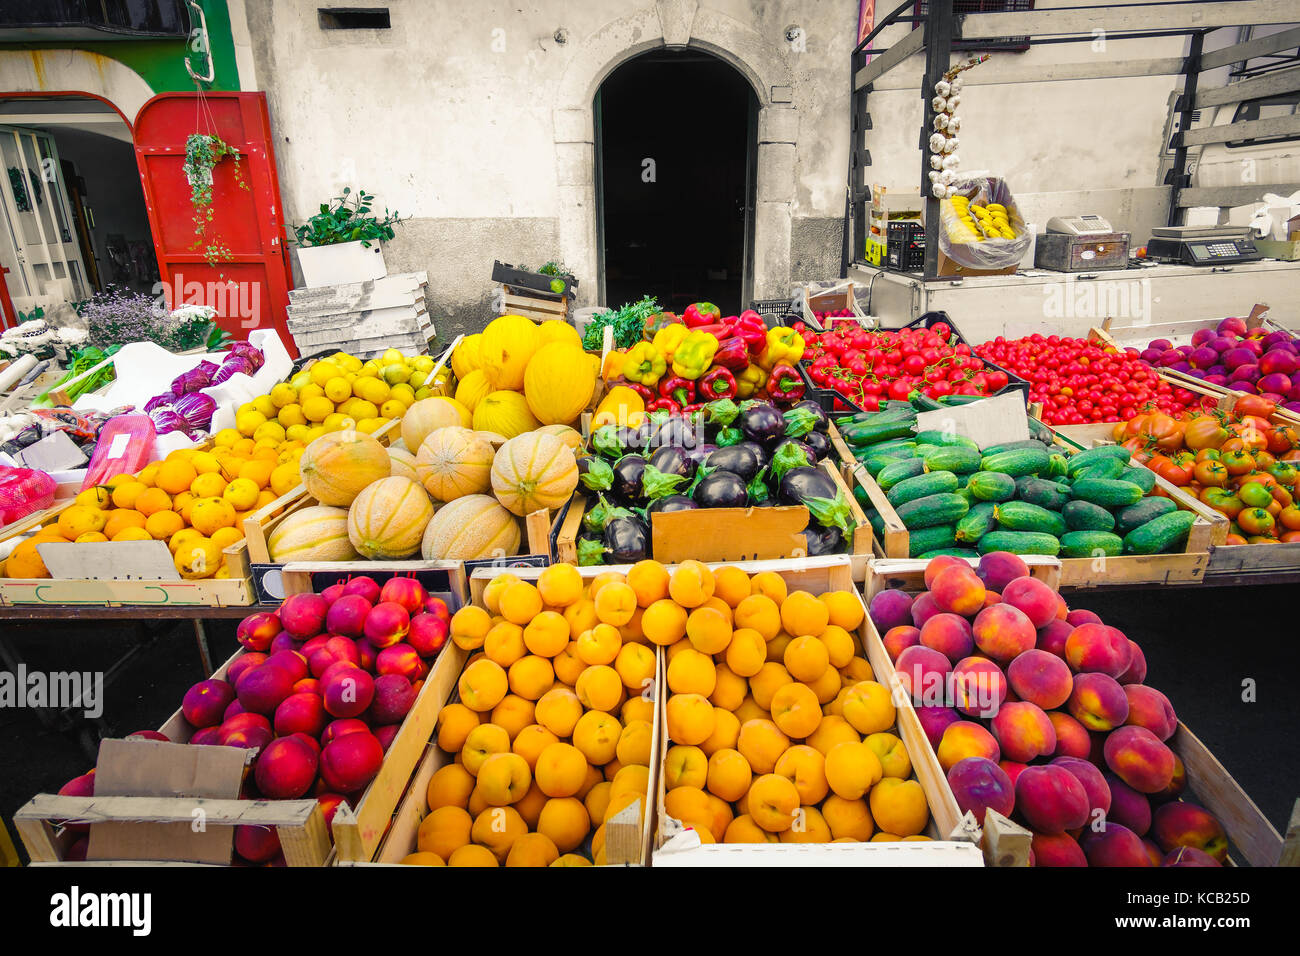 Marché local greengrocery les kilomètres alimentaires fruits et légumes Etagères Banque D'Images